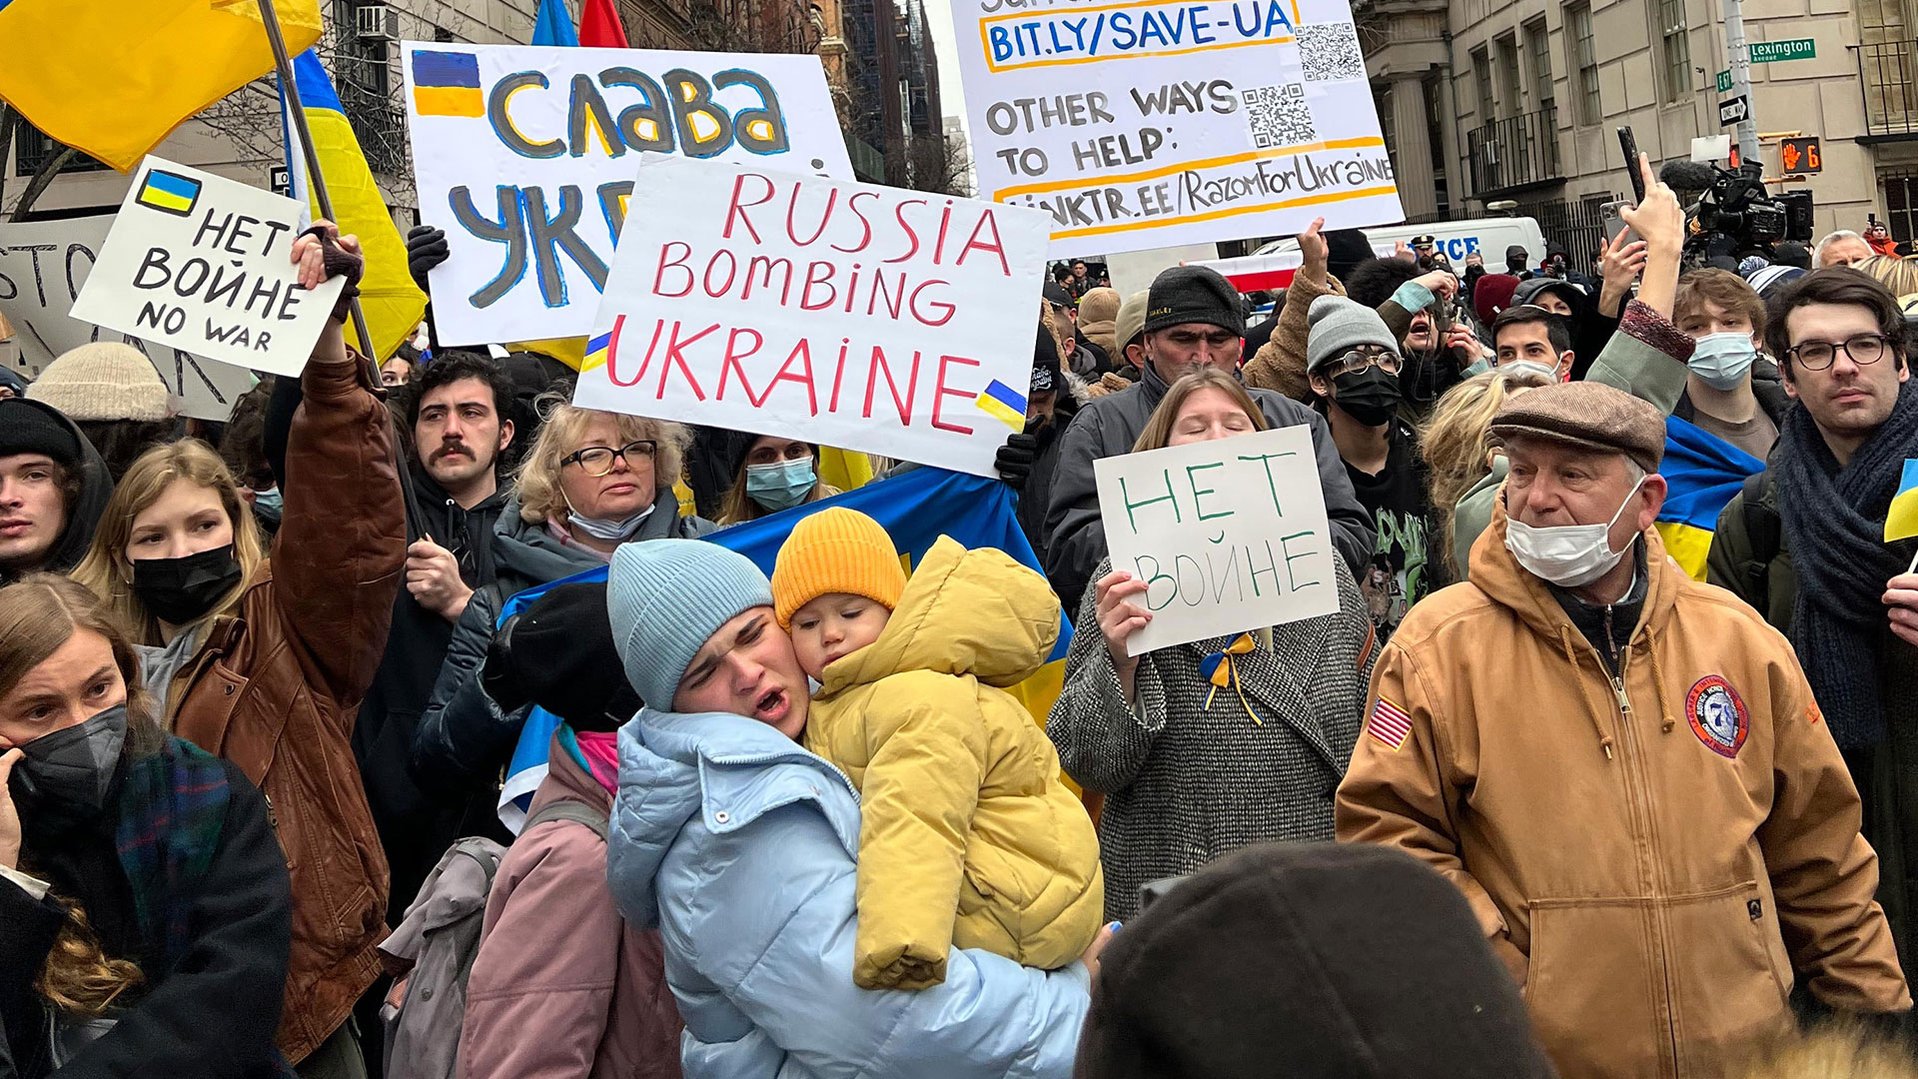 Demonstratie tegen oorlog in Oekraïne - War Child helpt gevluchte Oekraïense kinderen